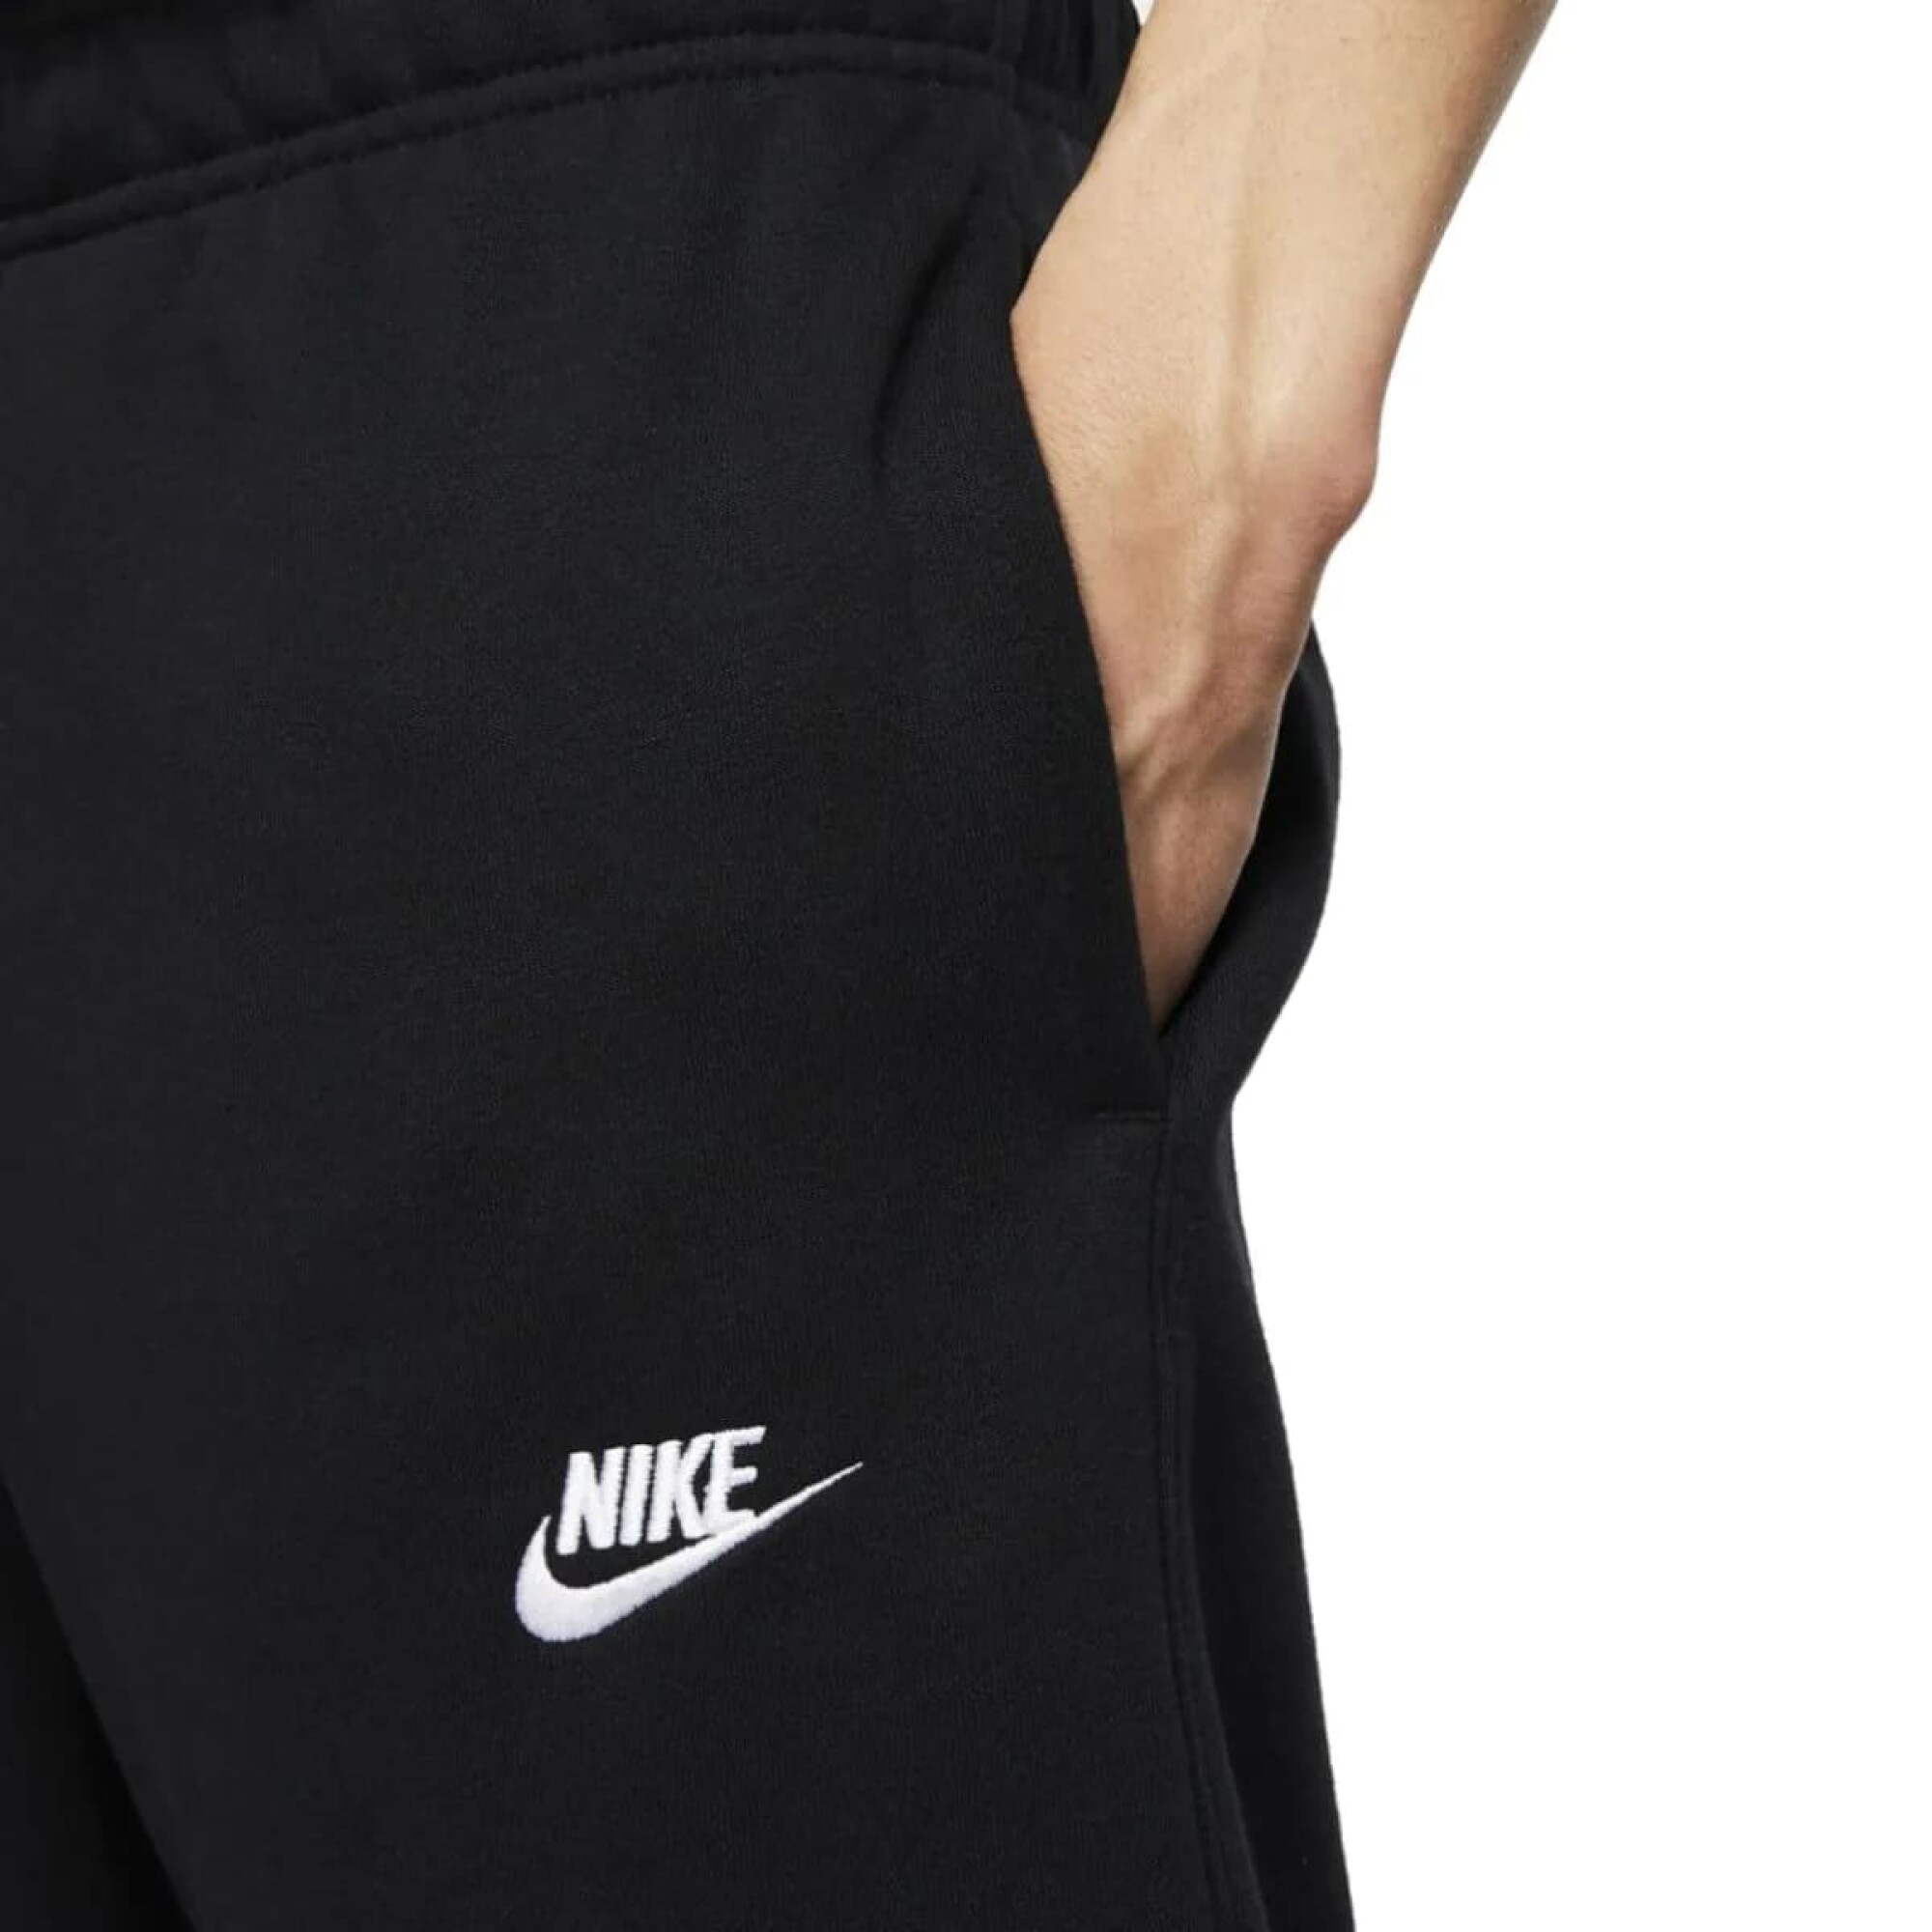 Pantalon Nike Moda Negro Club Jggr - S/C — Menpi